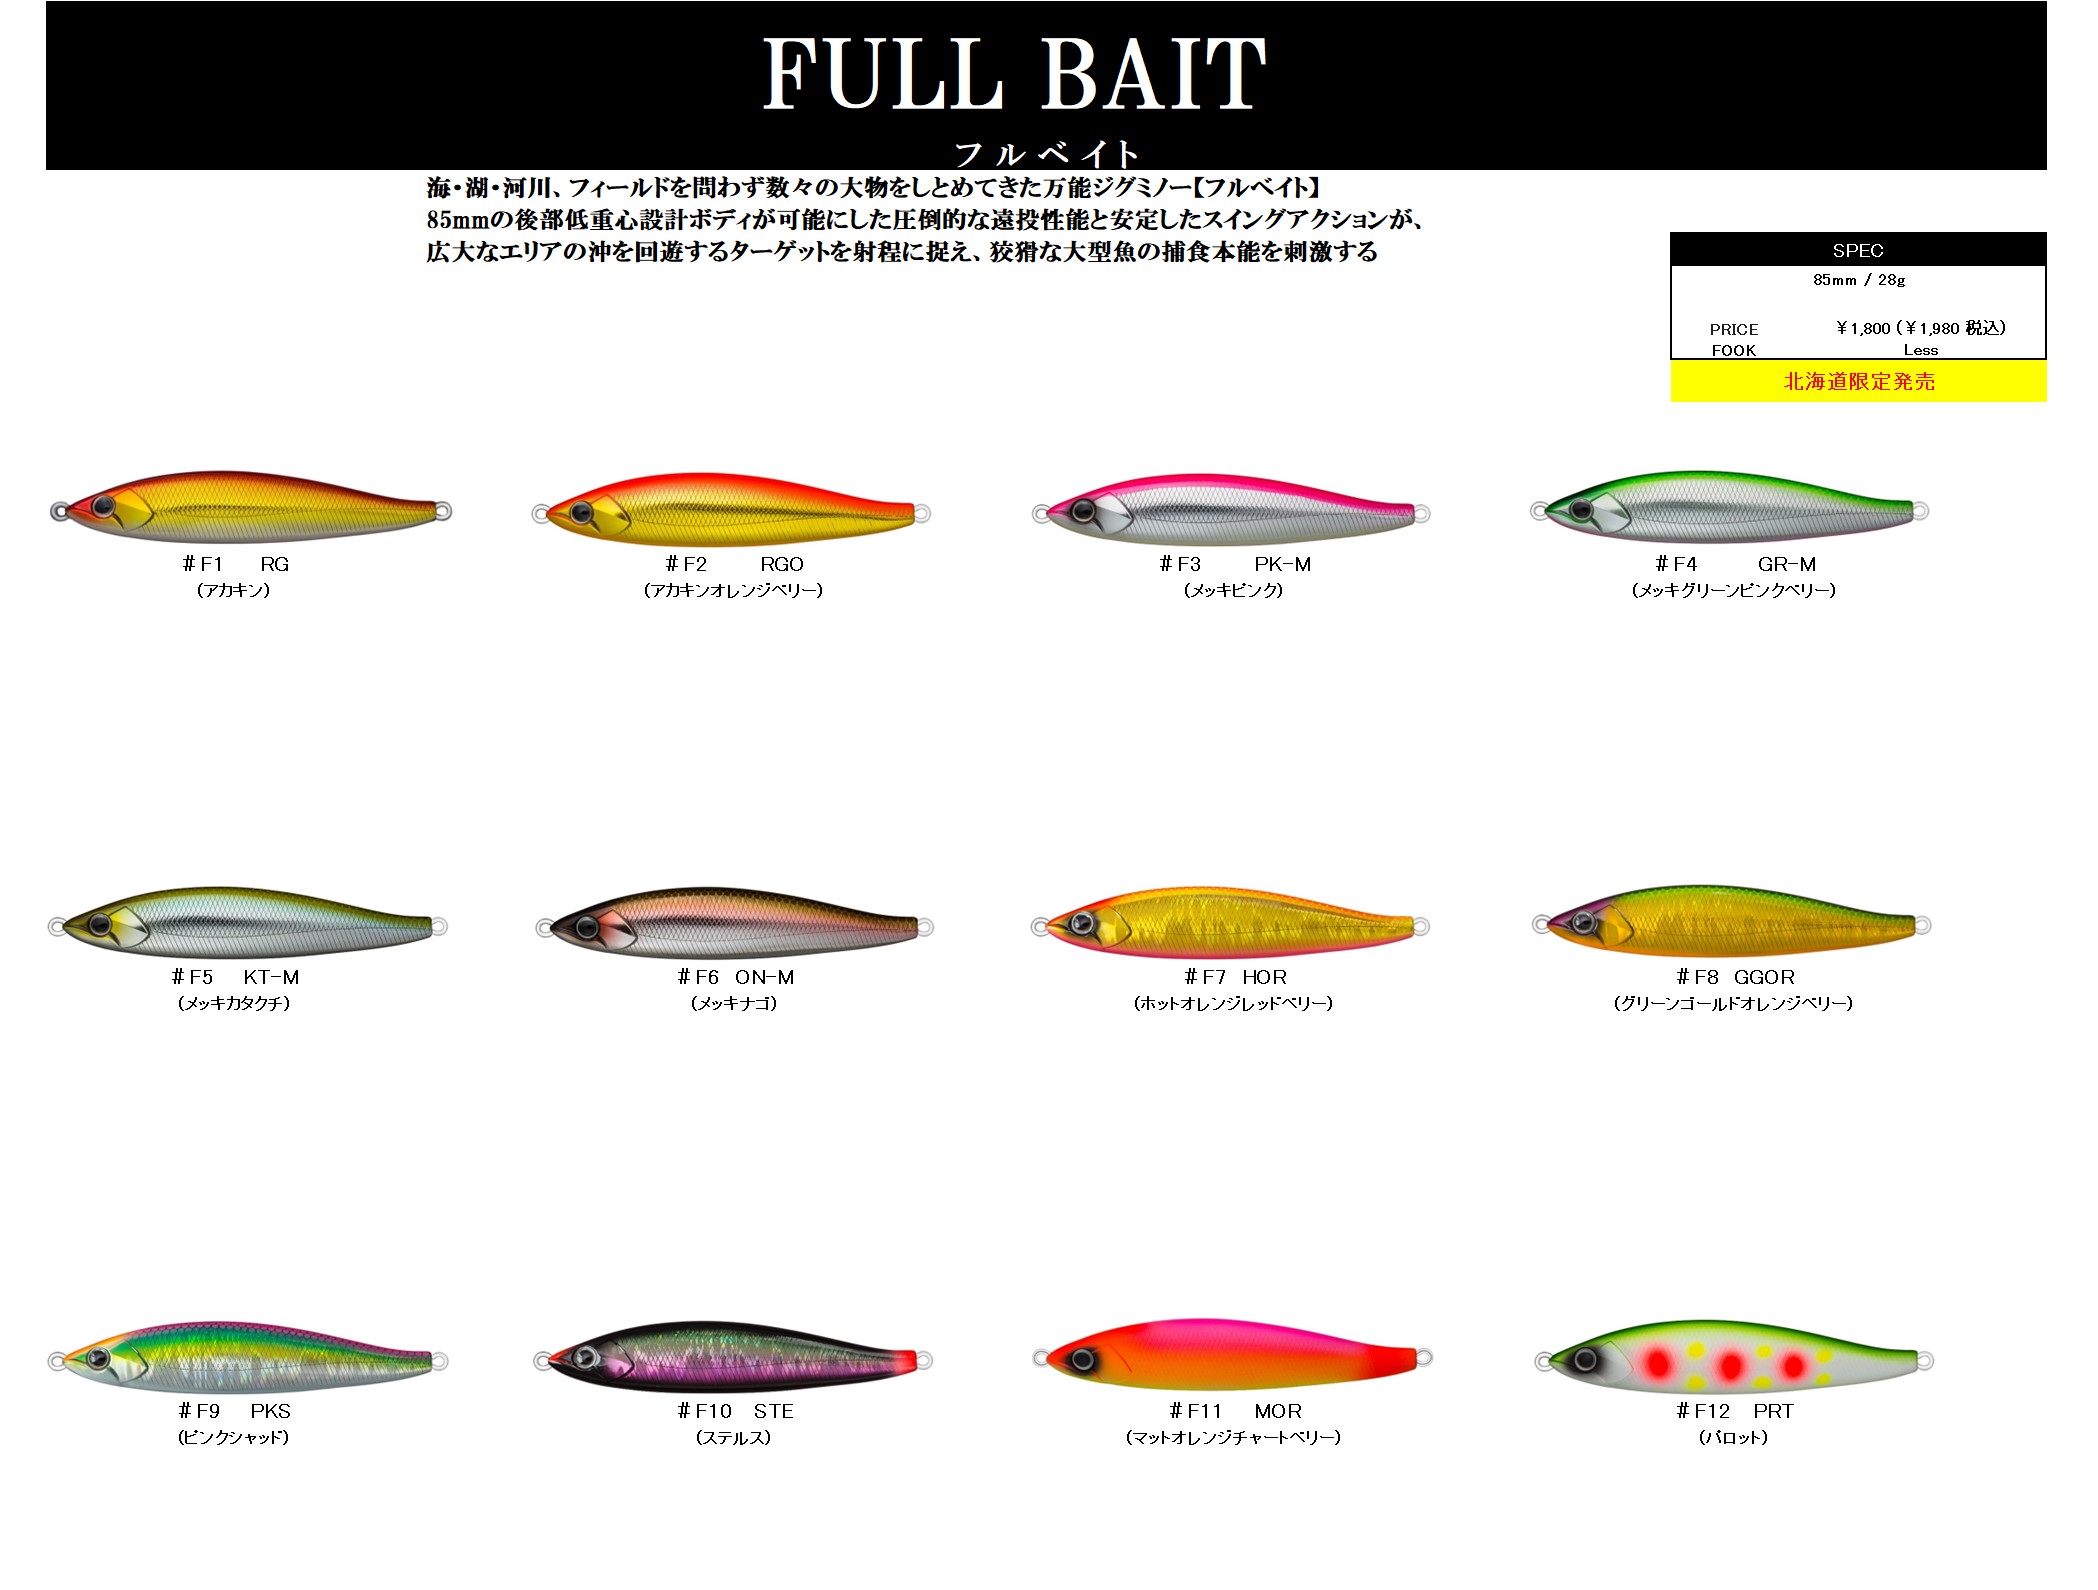 FULL BAIT – D3カスタムルアーズ